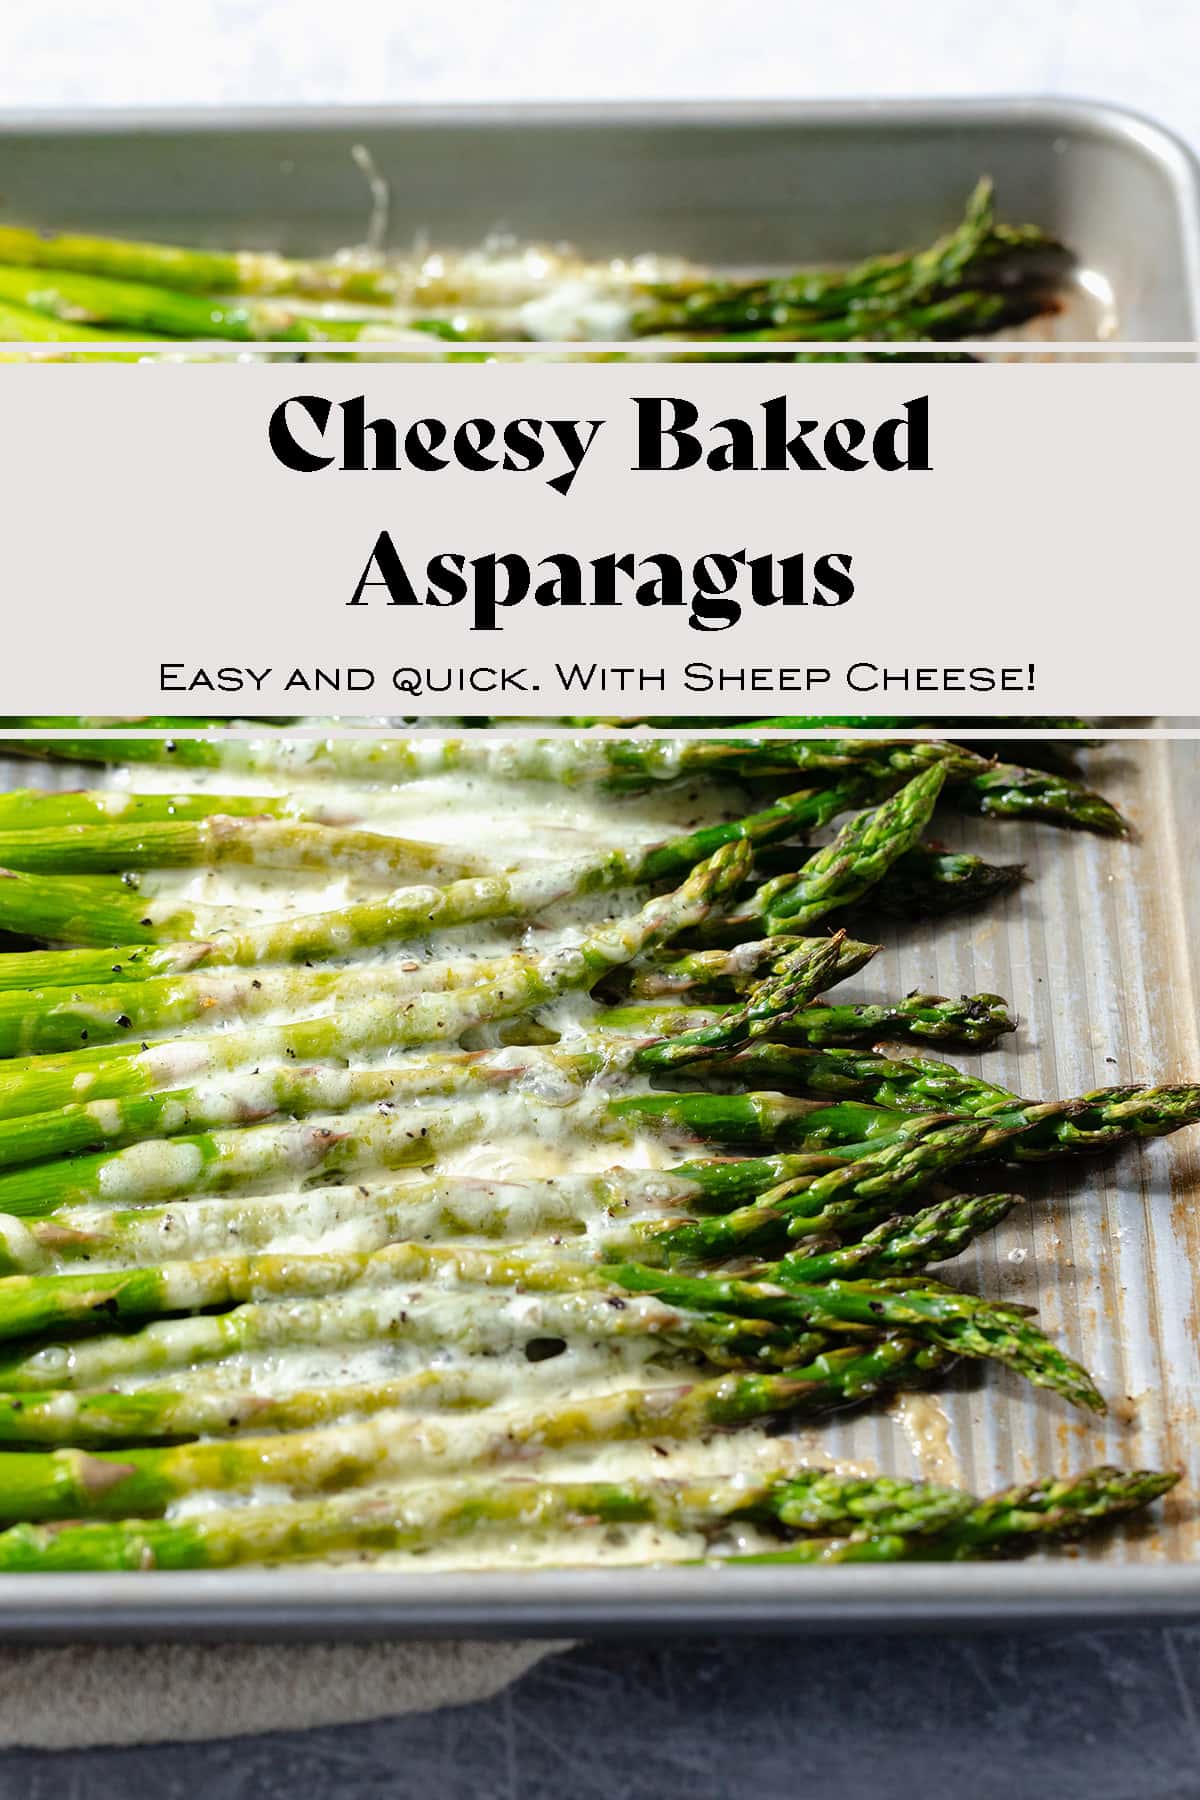 Cheesy Baked Asparagus - The Healthful Ideas